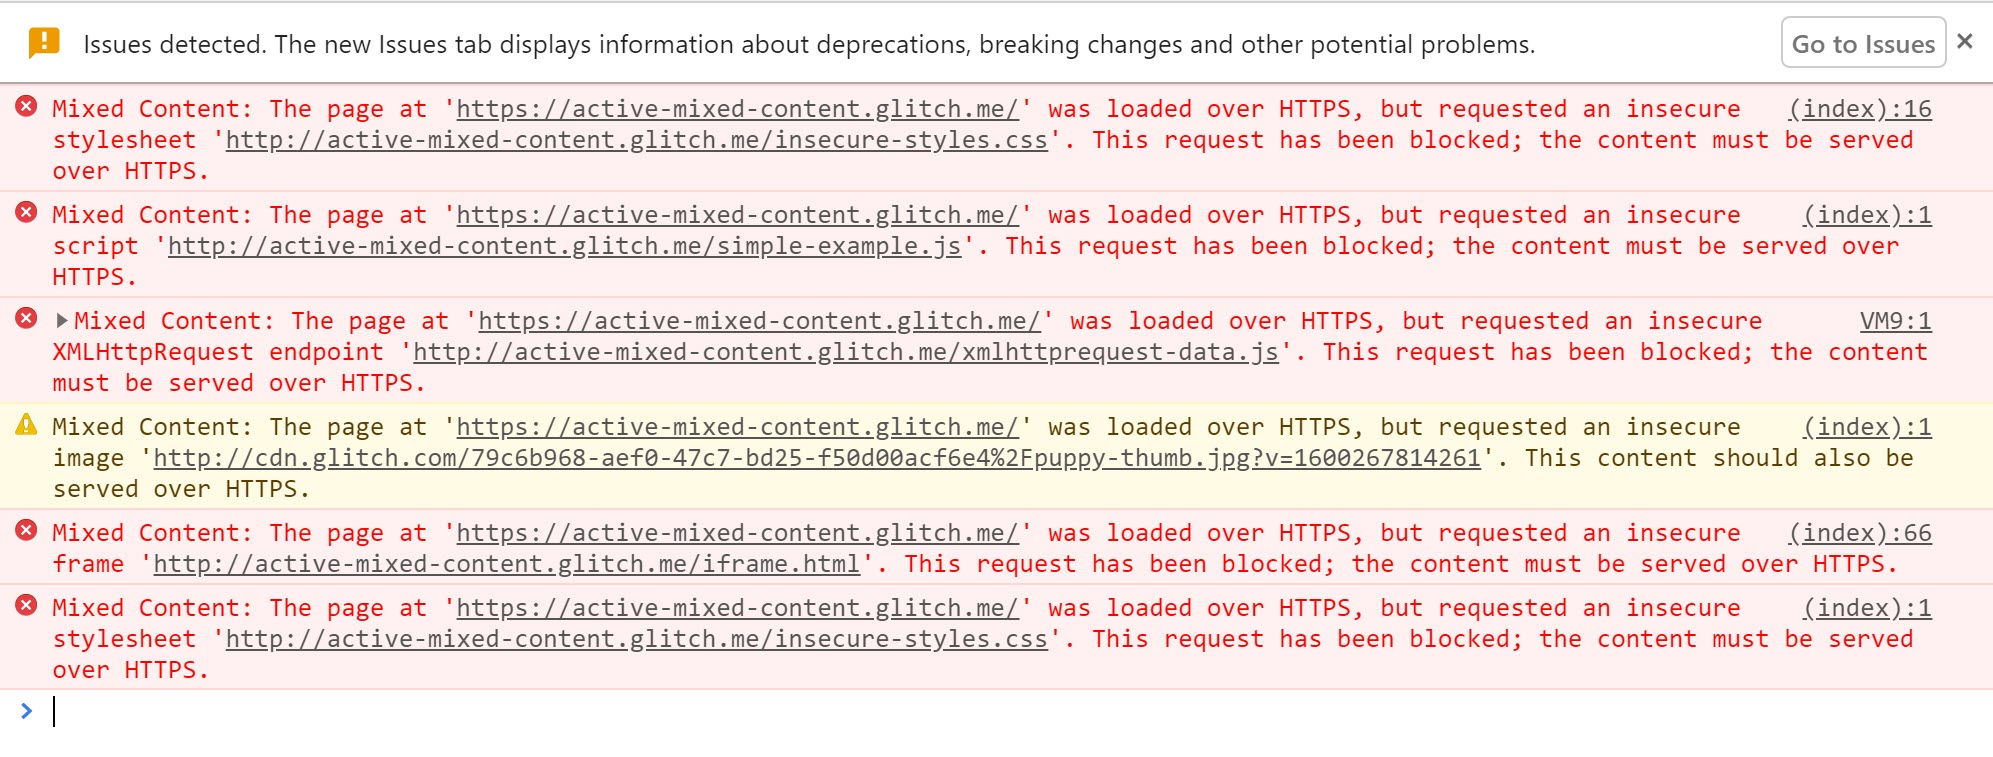 显示阻止主动混合内容时显示的警告的 Chrome 开发者工具